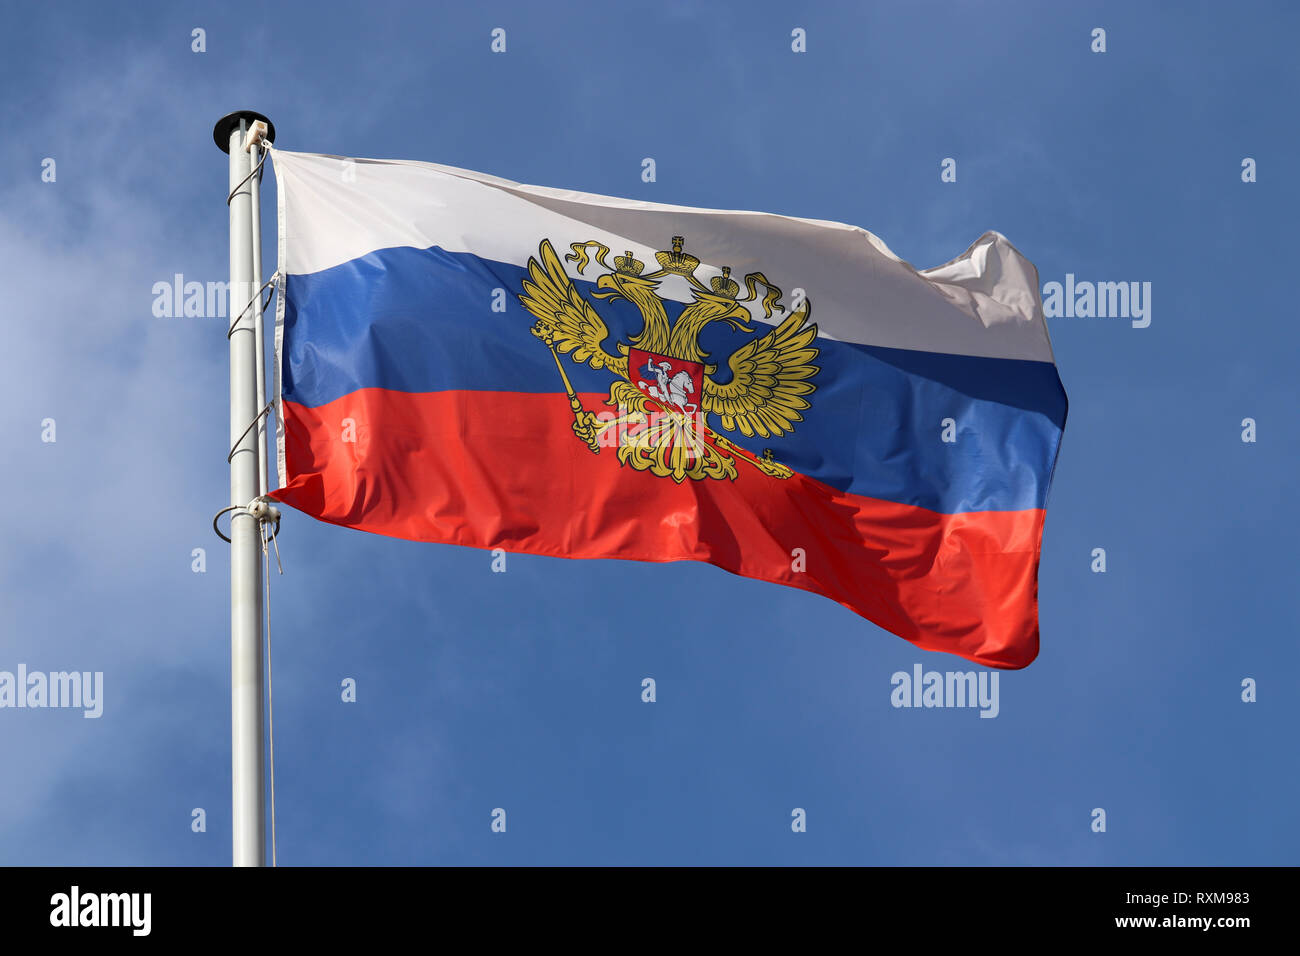 Russia Flag Icon - Flag Icons 